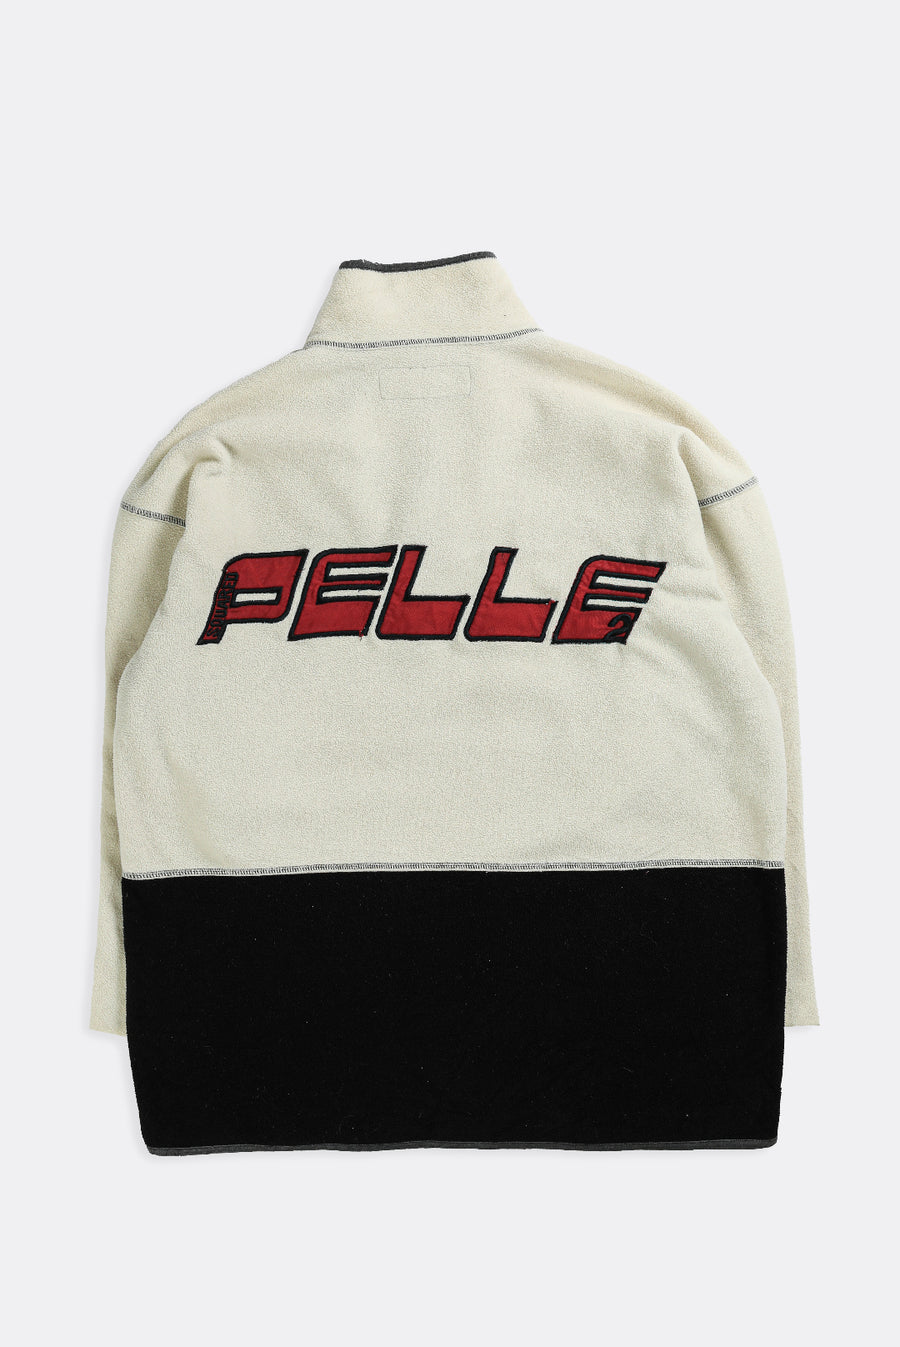 Vintage Pelle Pelle Fleece Sweater